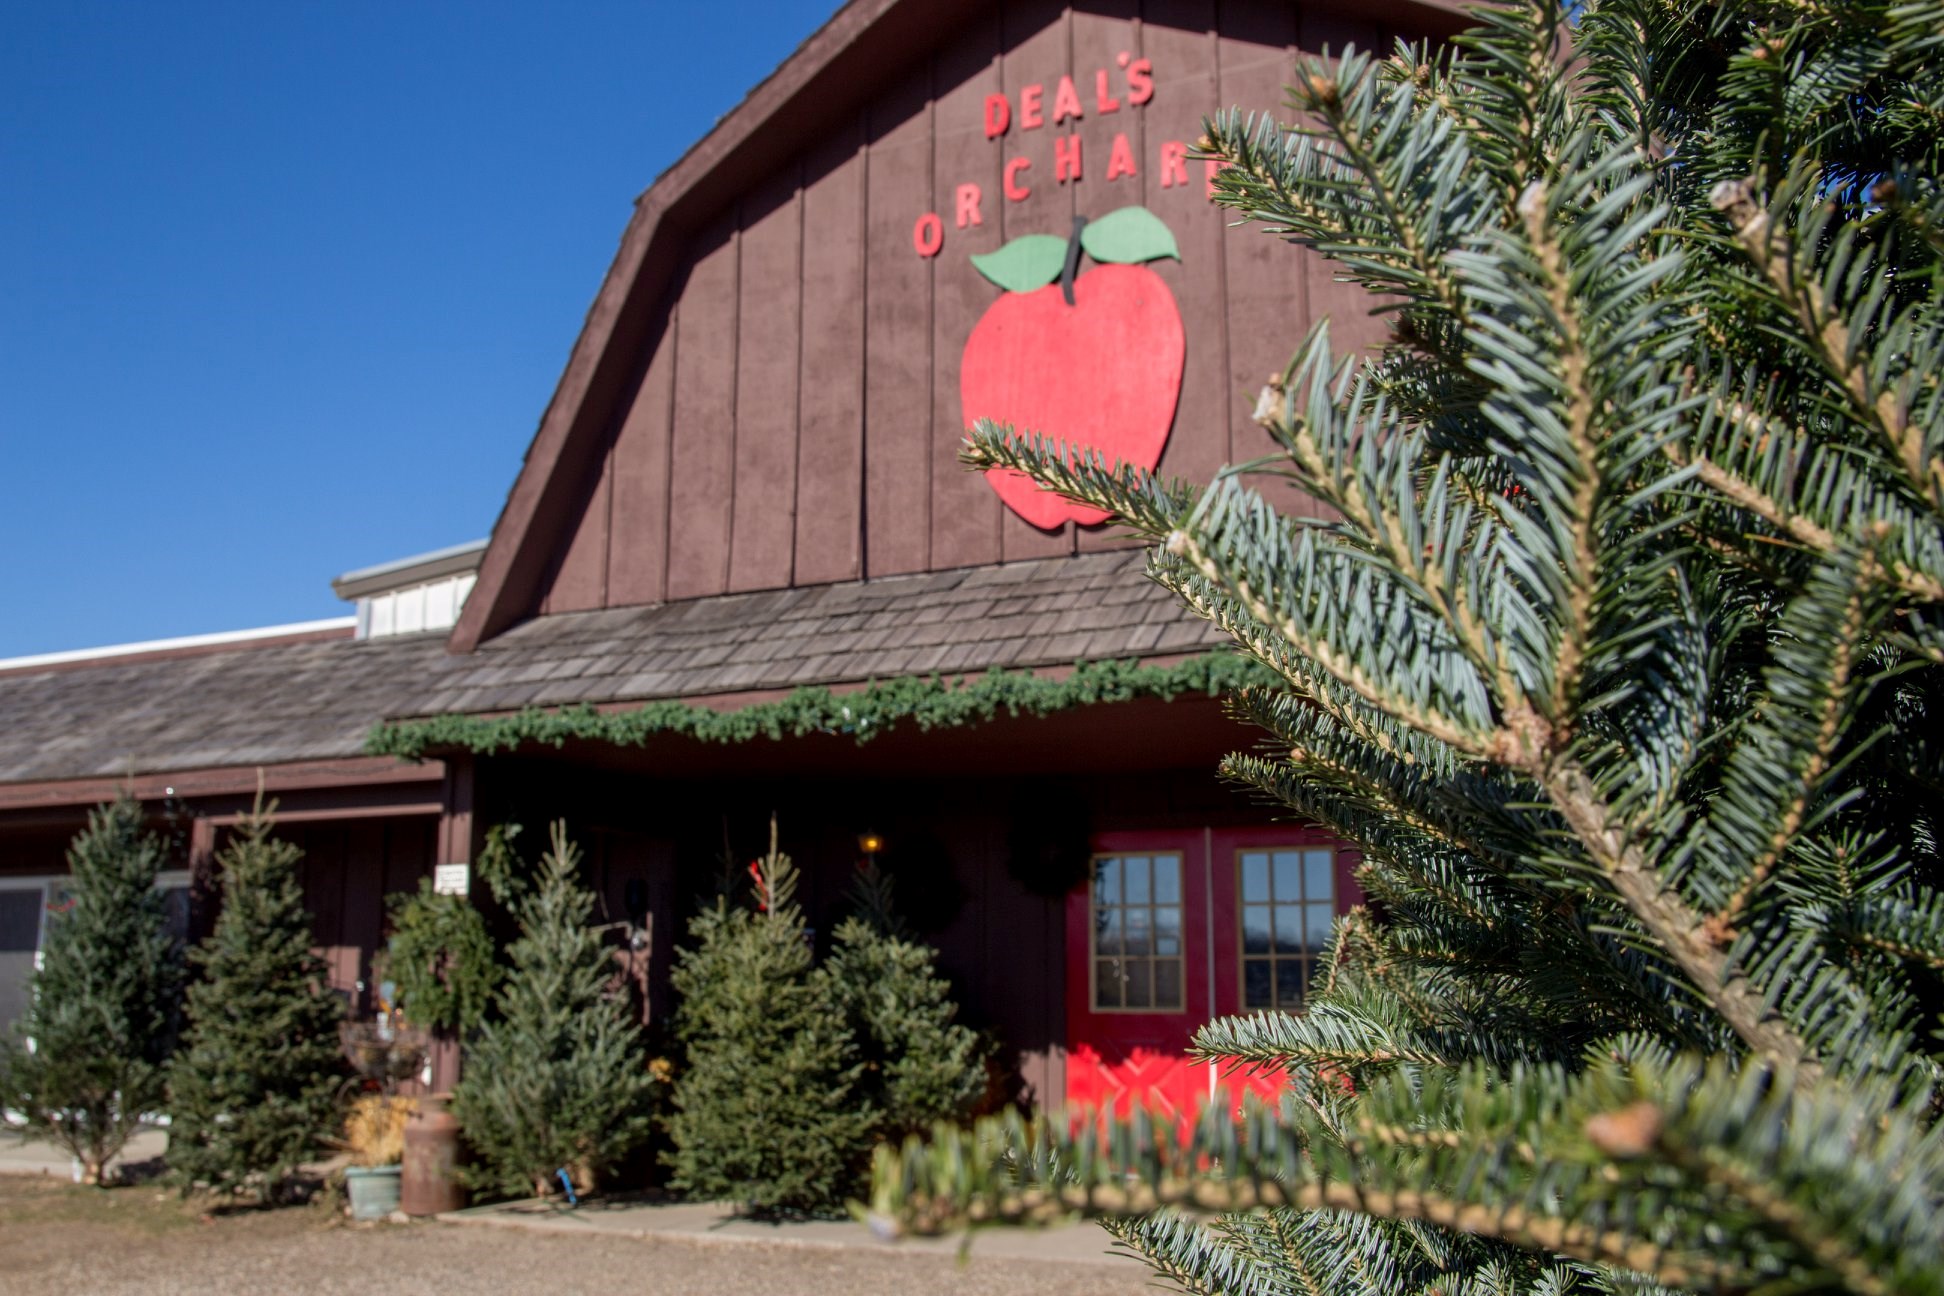 Deal's Orchard christmas tree farm | ChristmasTreeFarms.net